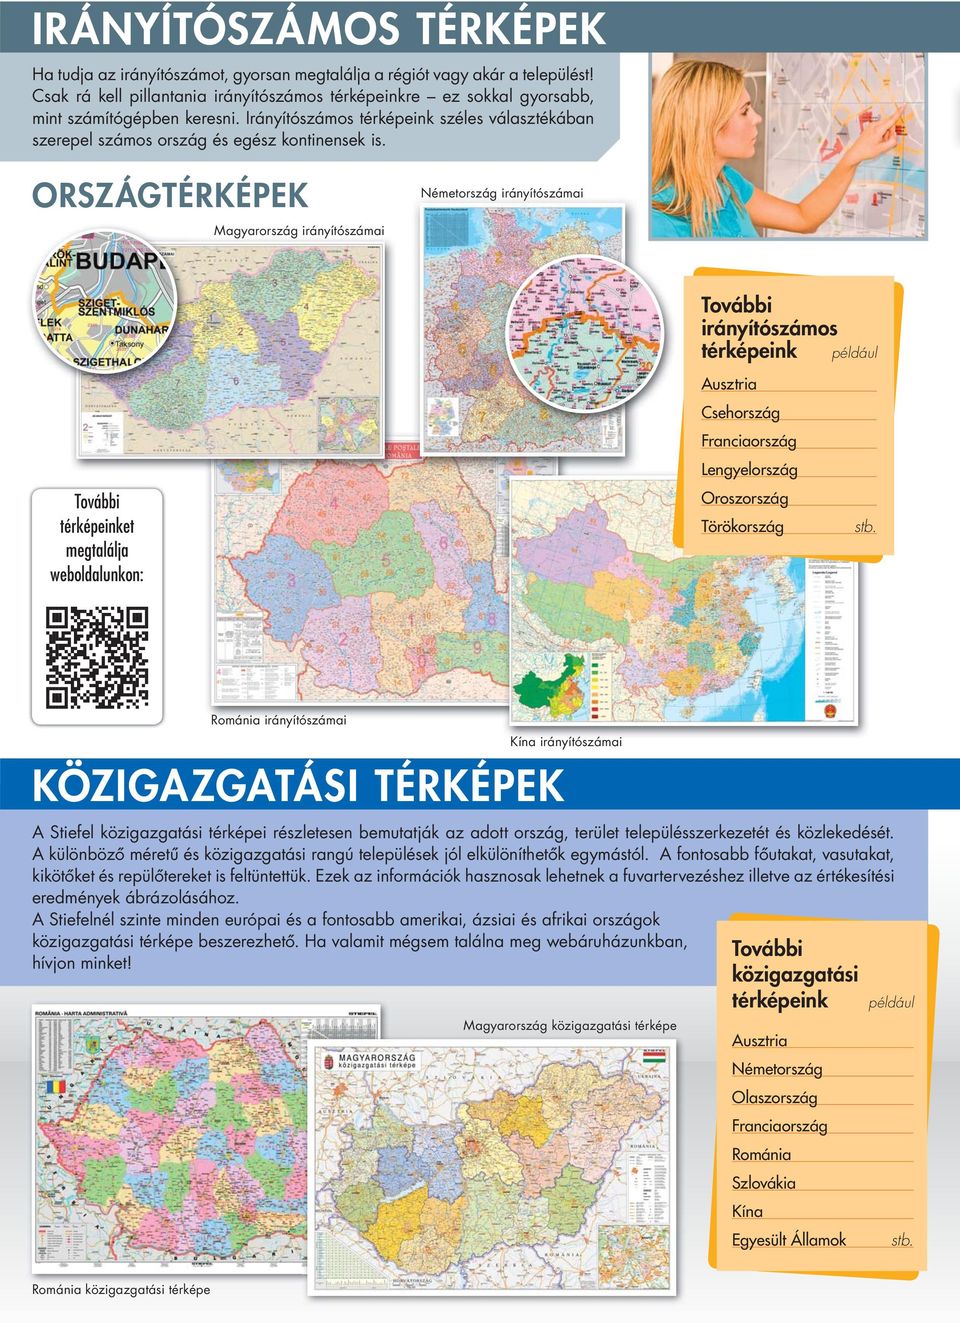 ORSZÁGTÉRKÉPEK Magyarország irányítószámai Németország irányítószámai irányítószámos térképeink például térképeinket megtalálja weboldalunkon: Ausztria Csehország Franciaország Lengyelország